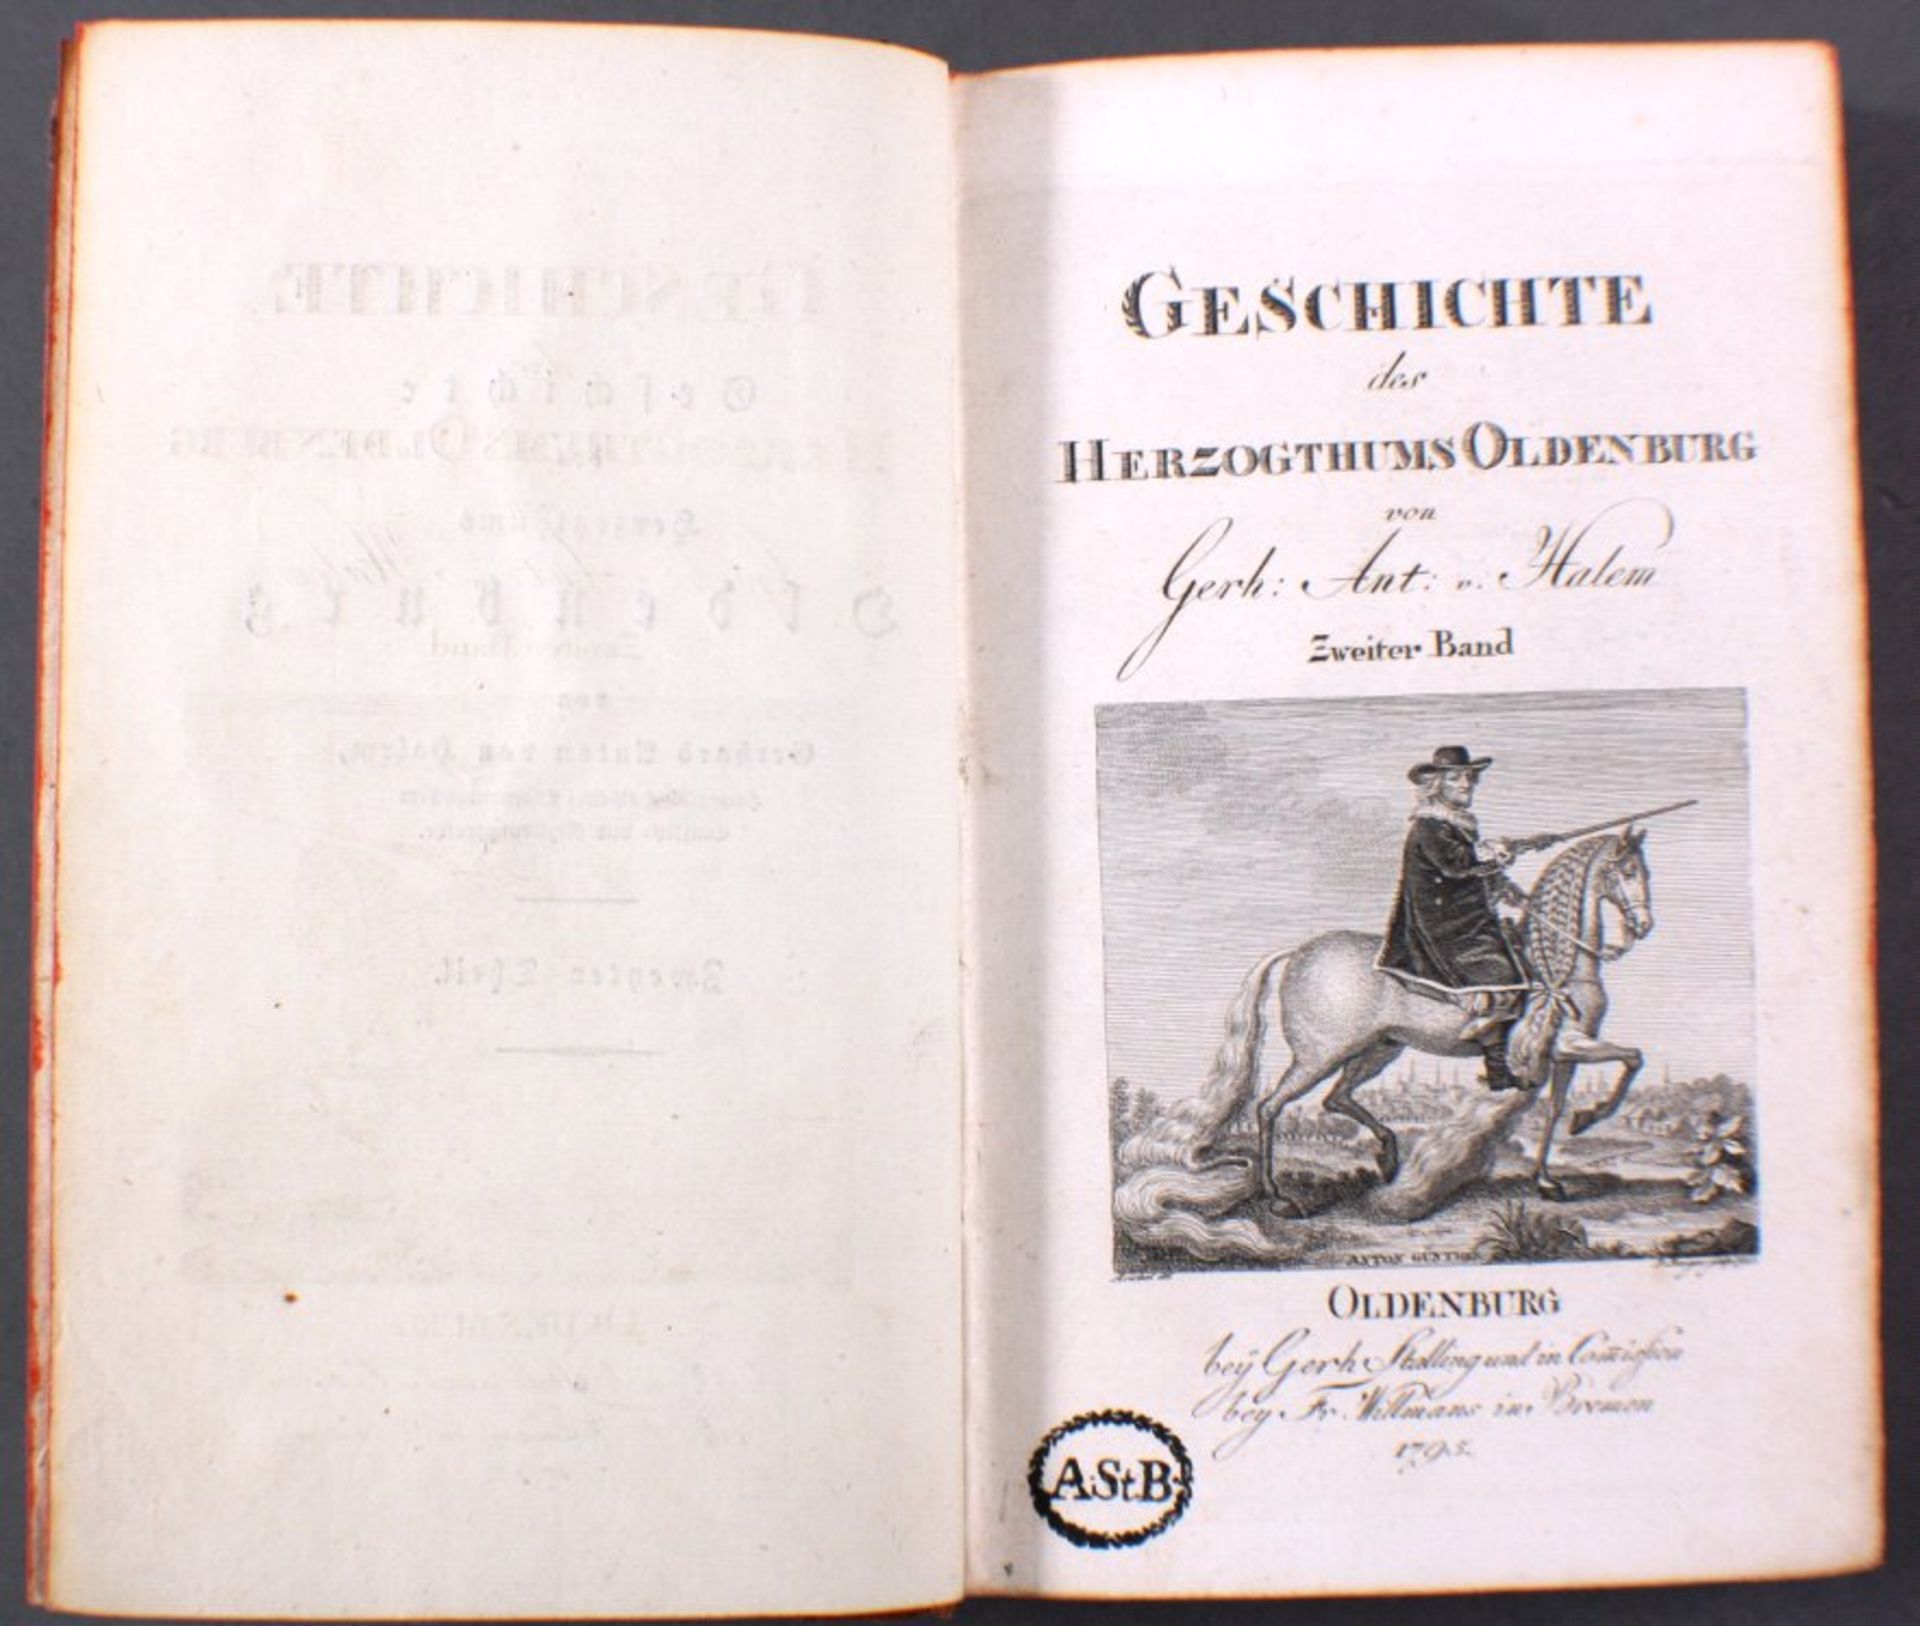 Geschichte des Herzogtums OldenburgVon Anton von Harlem, 2. Teil, Oldenburg 1795, vollständig,517 - Image 2 of 2